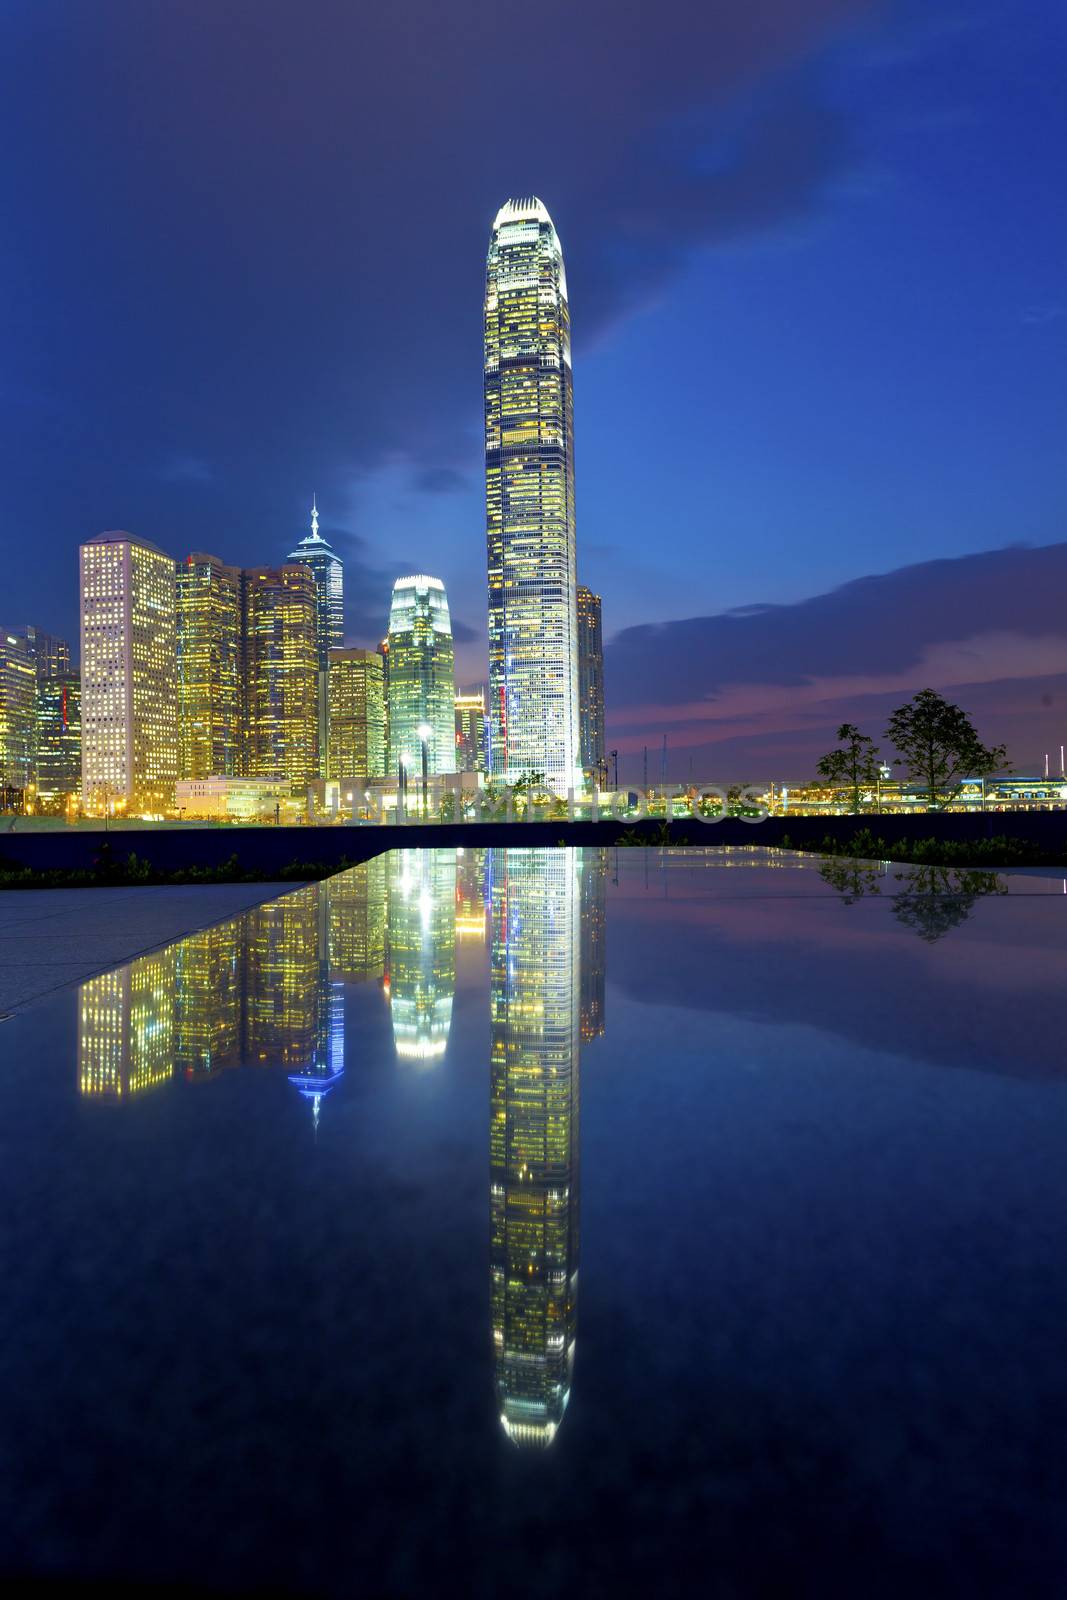 Hong Kong buildings at night by kawing921